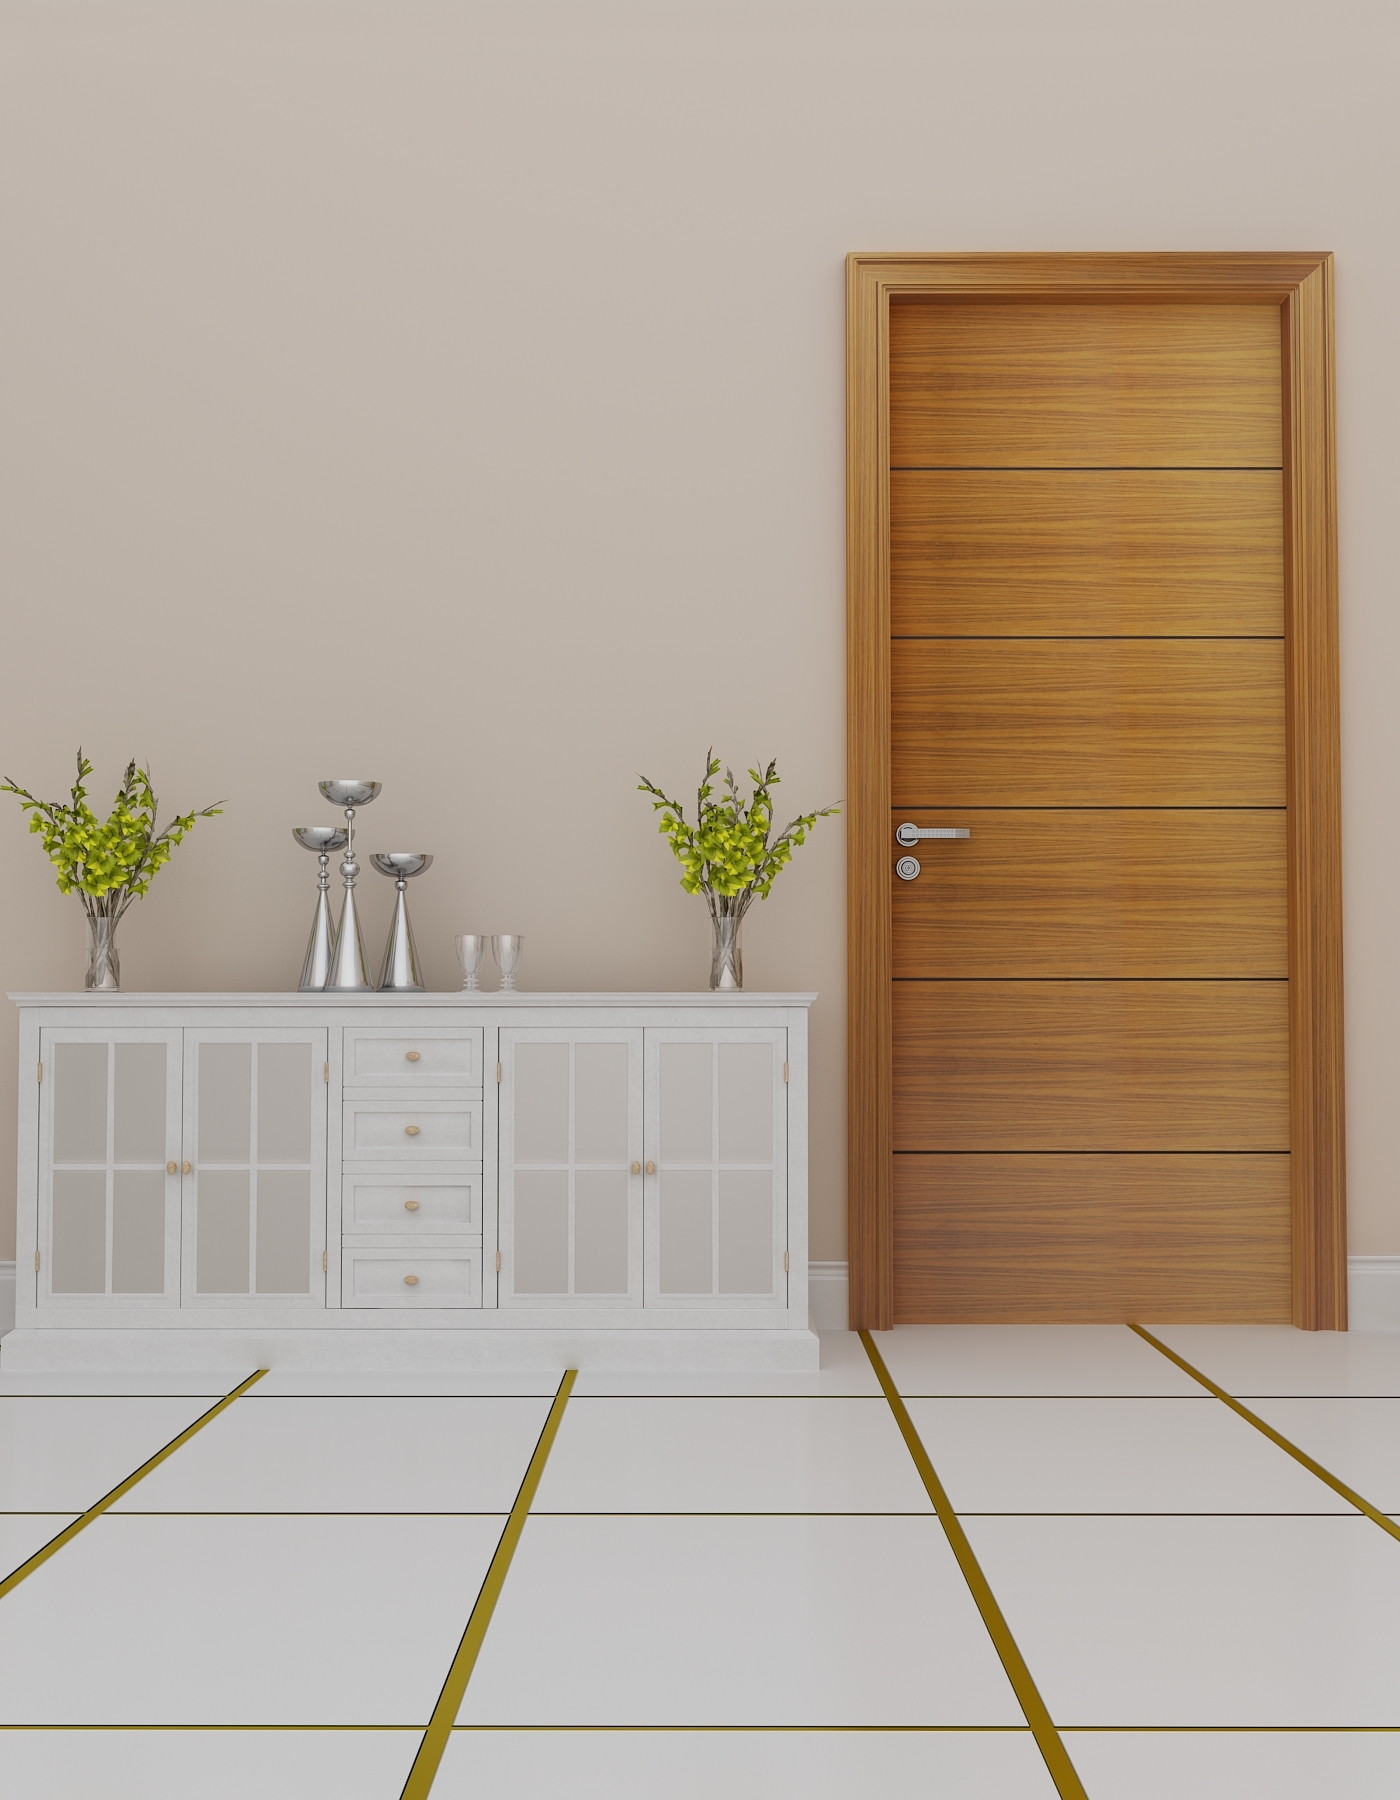 Design your home doors & windows with my world of doors